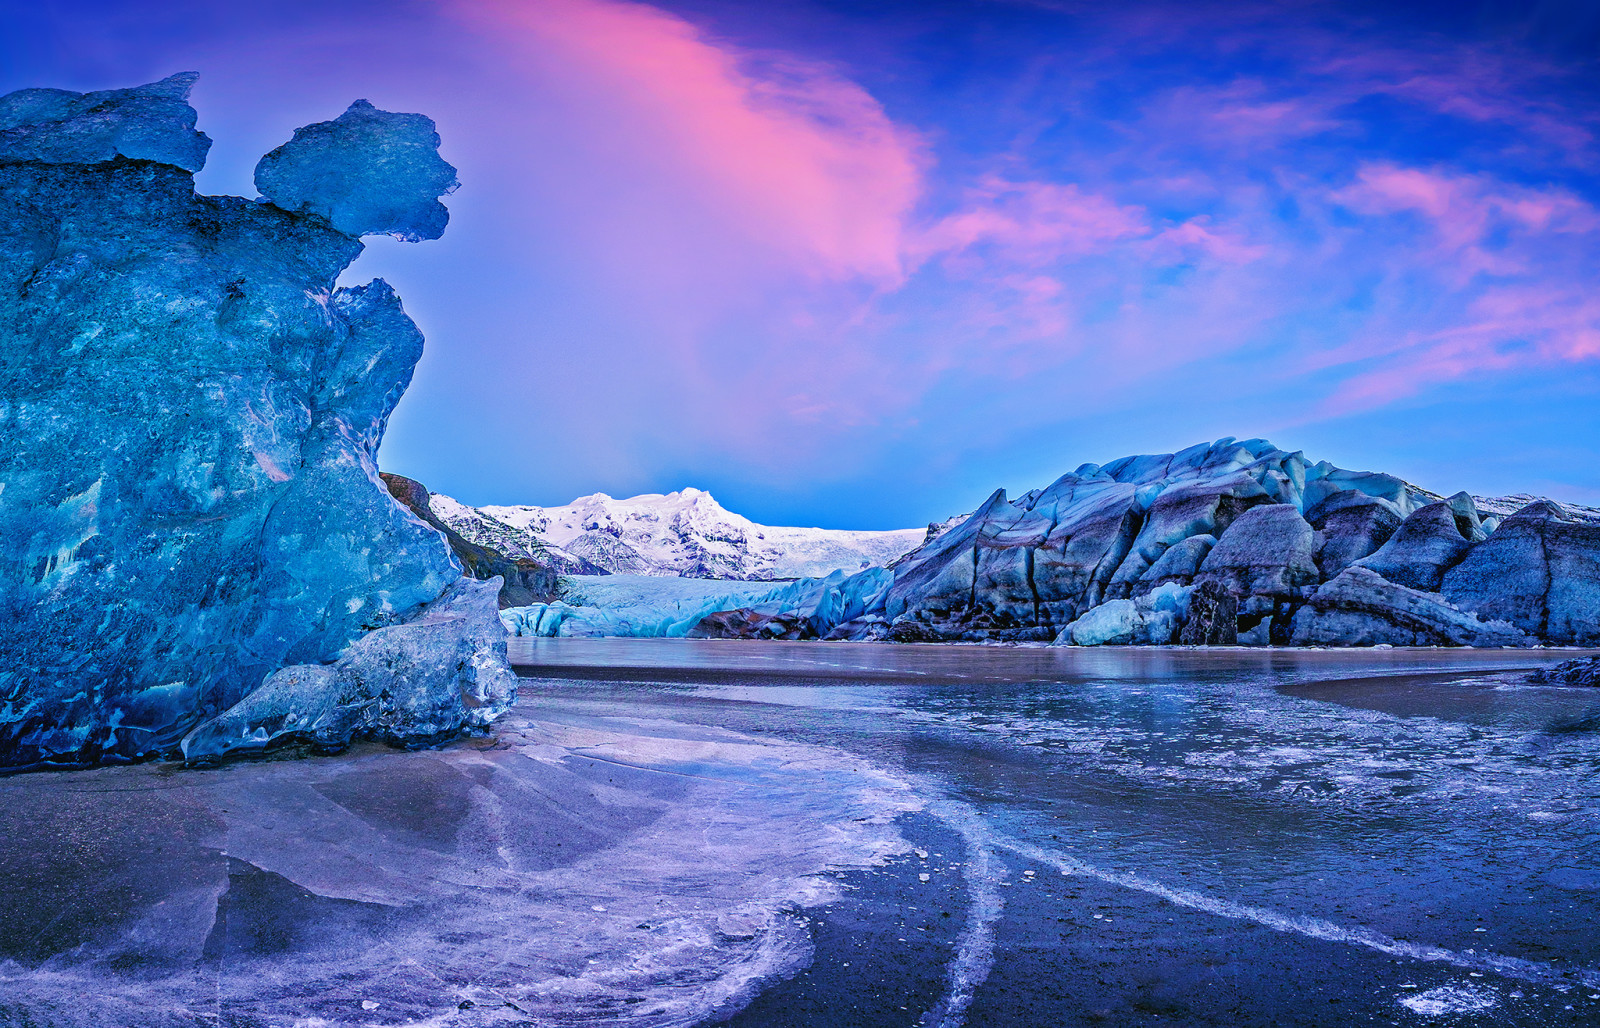 พระอาทิตย์ตกดิน, น้ำแข็ง, ภูเขา, น้ำ, ประเทศไอซ์แลนด์, Auster-Skaftafellssysla, ธารน้ำแข็งVatnajökull, Vatnajökull